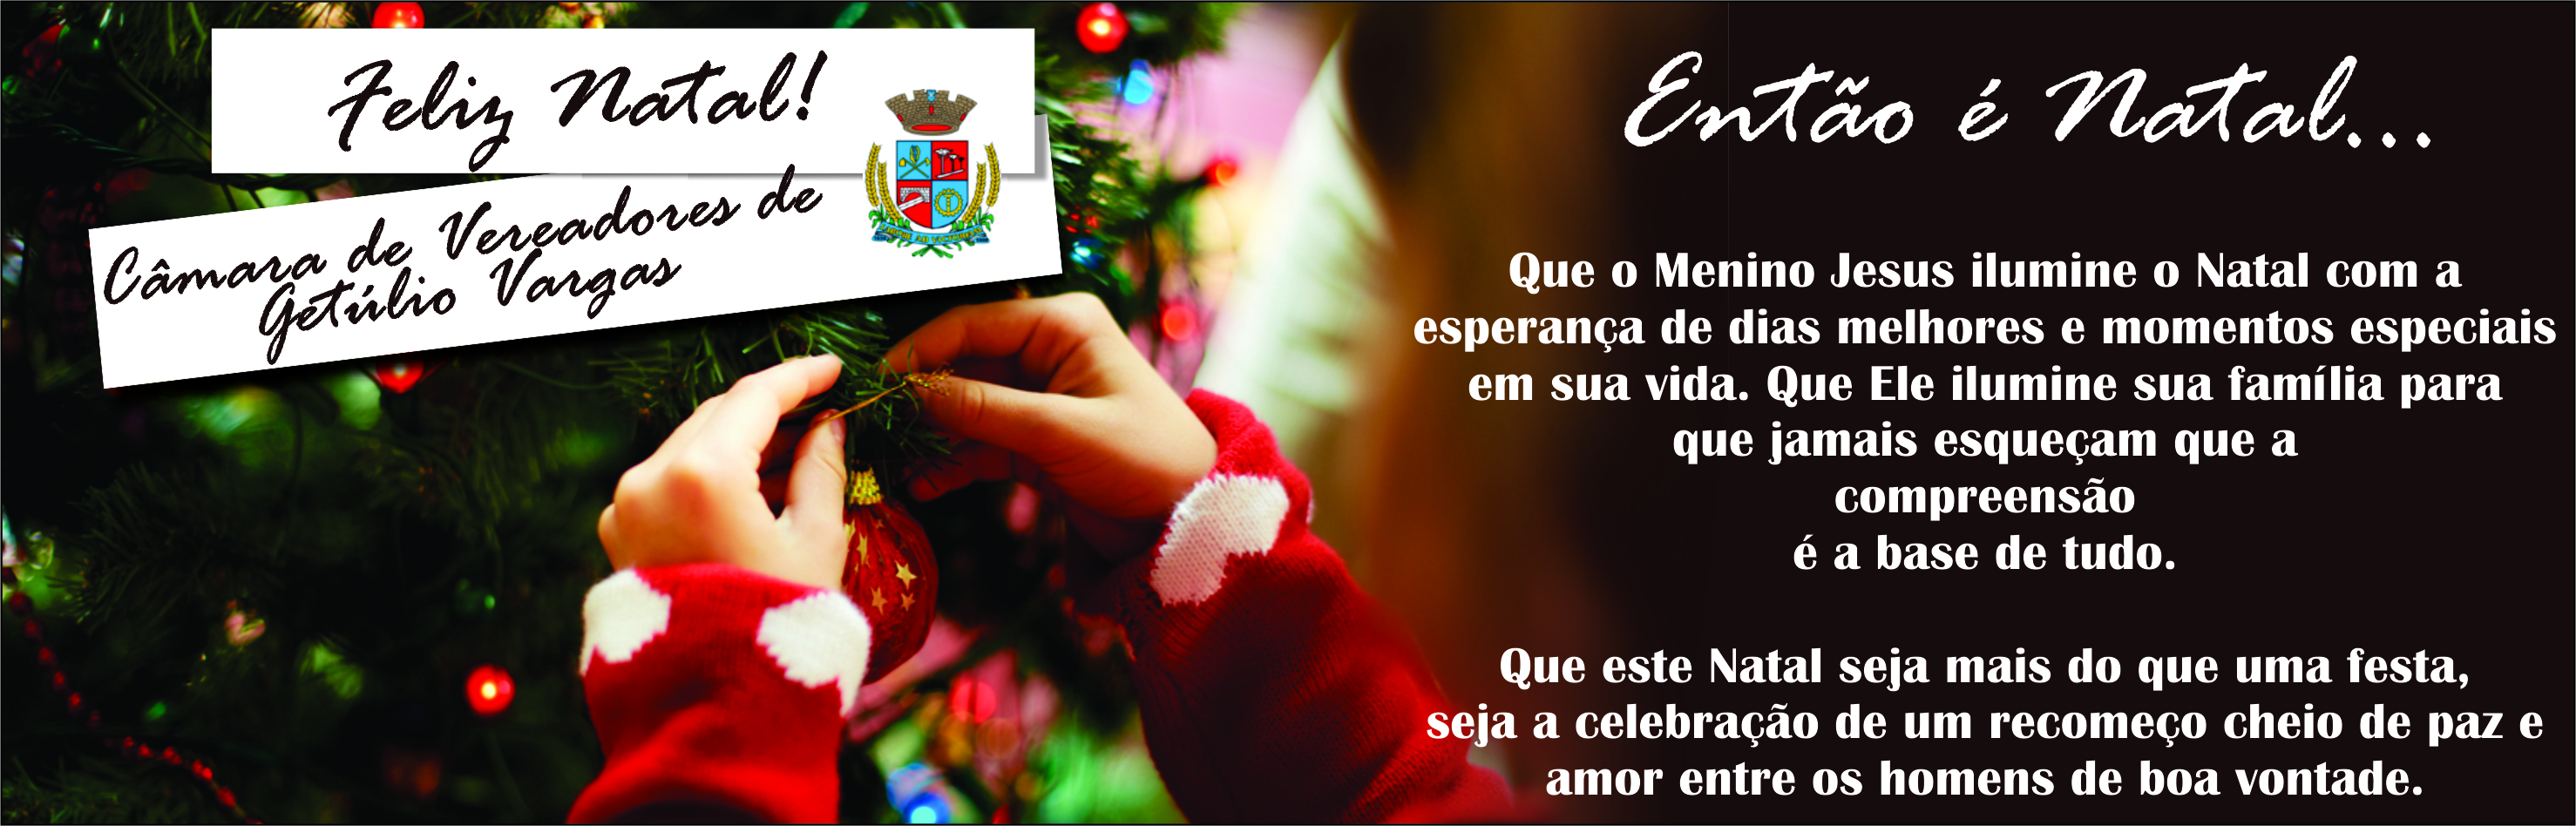 Poder Legislativo de Getúlio Vargas deseja um Feliz Natal!